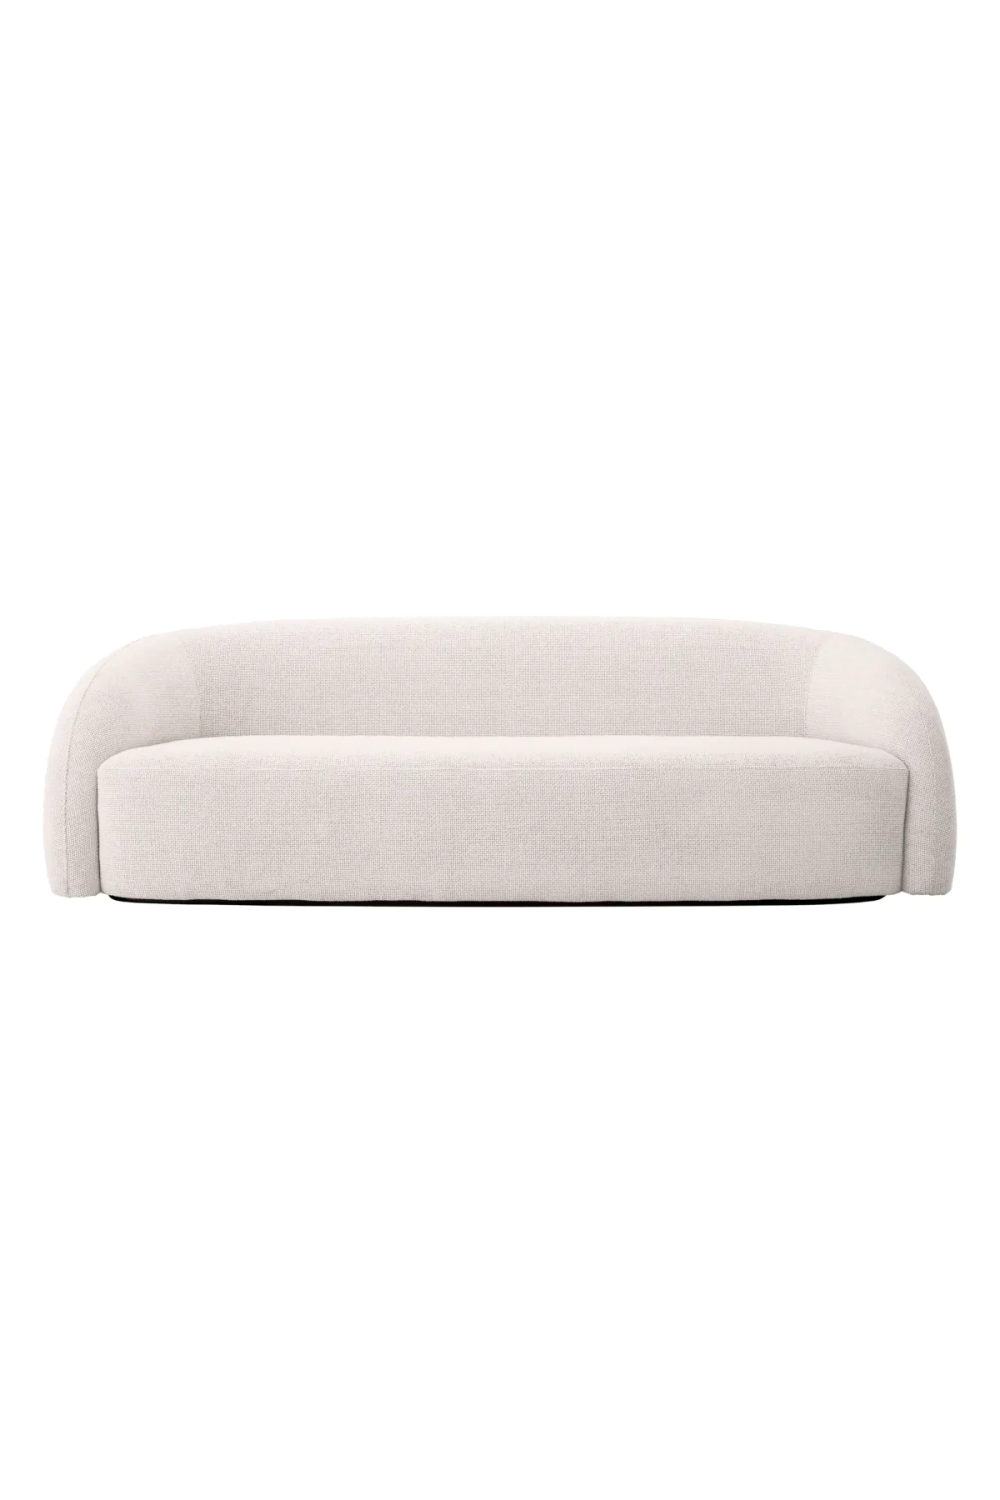 White Modern Sofa | Eichholtz Novelle | Oroa.com